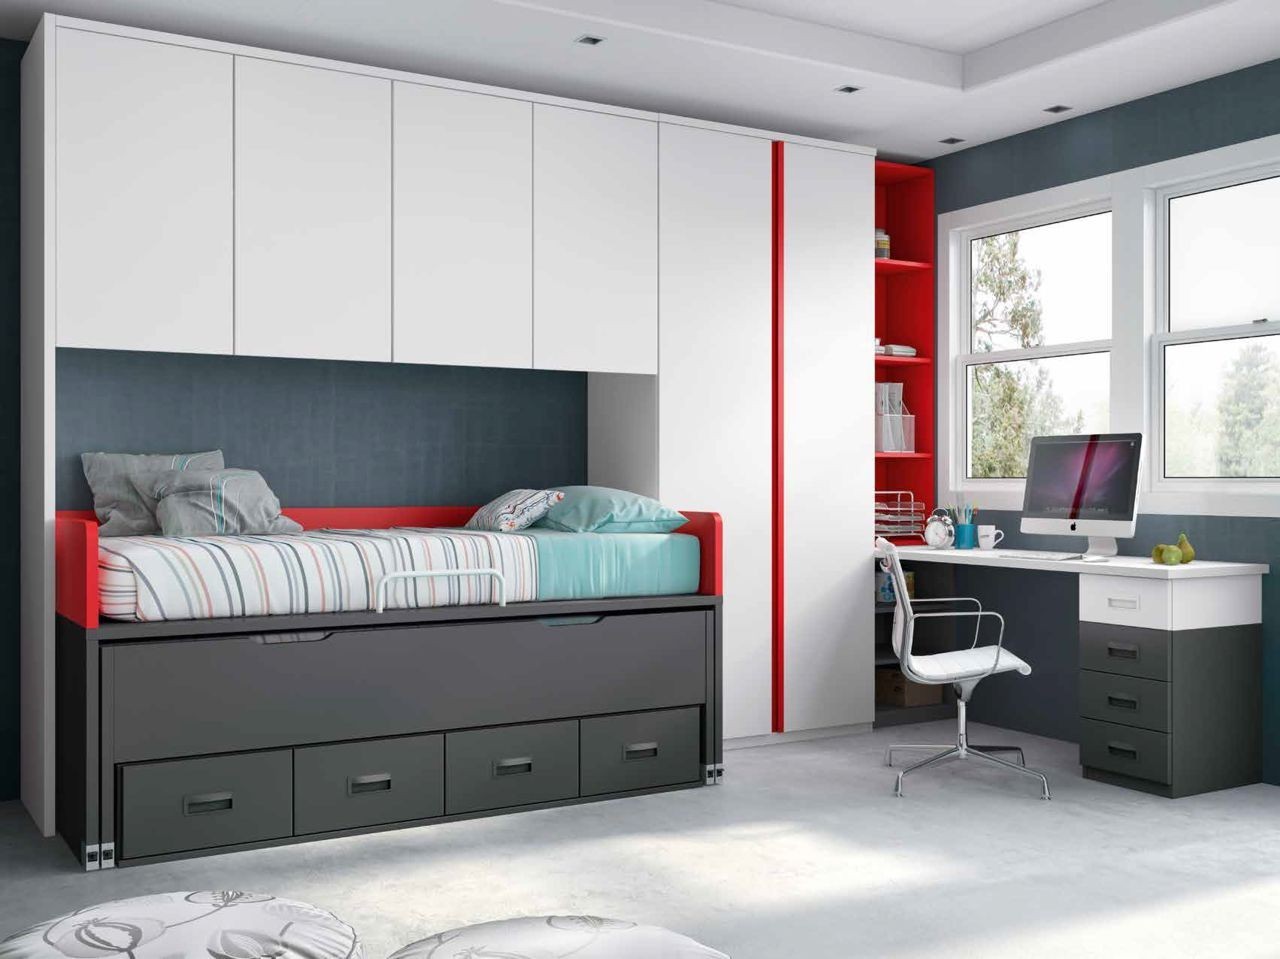 Dormitorio juvenil en color blanco, pizarra y rojo con tirador Box del modelo Formas F052 de